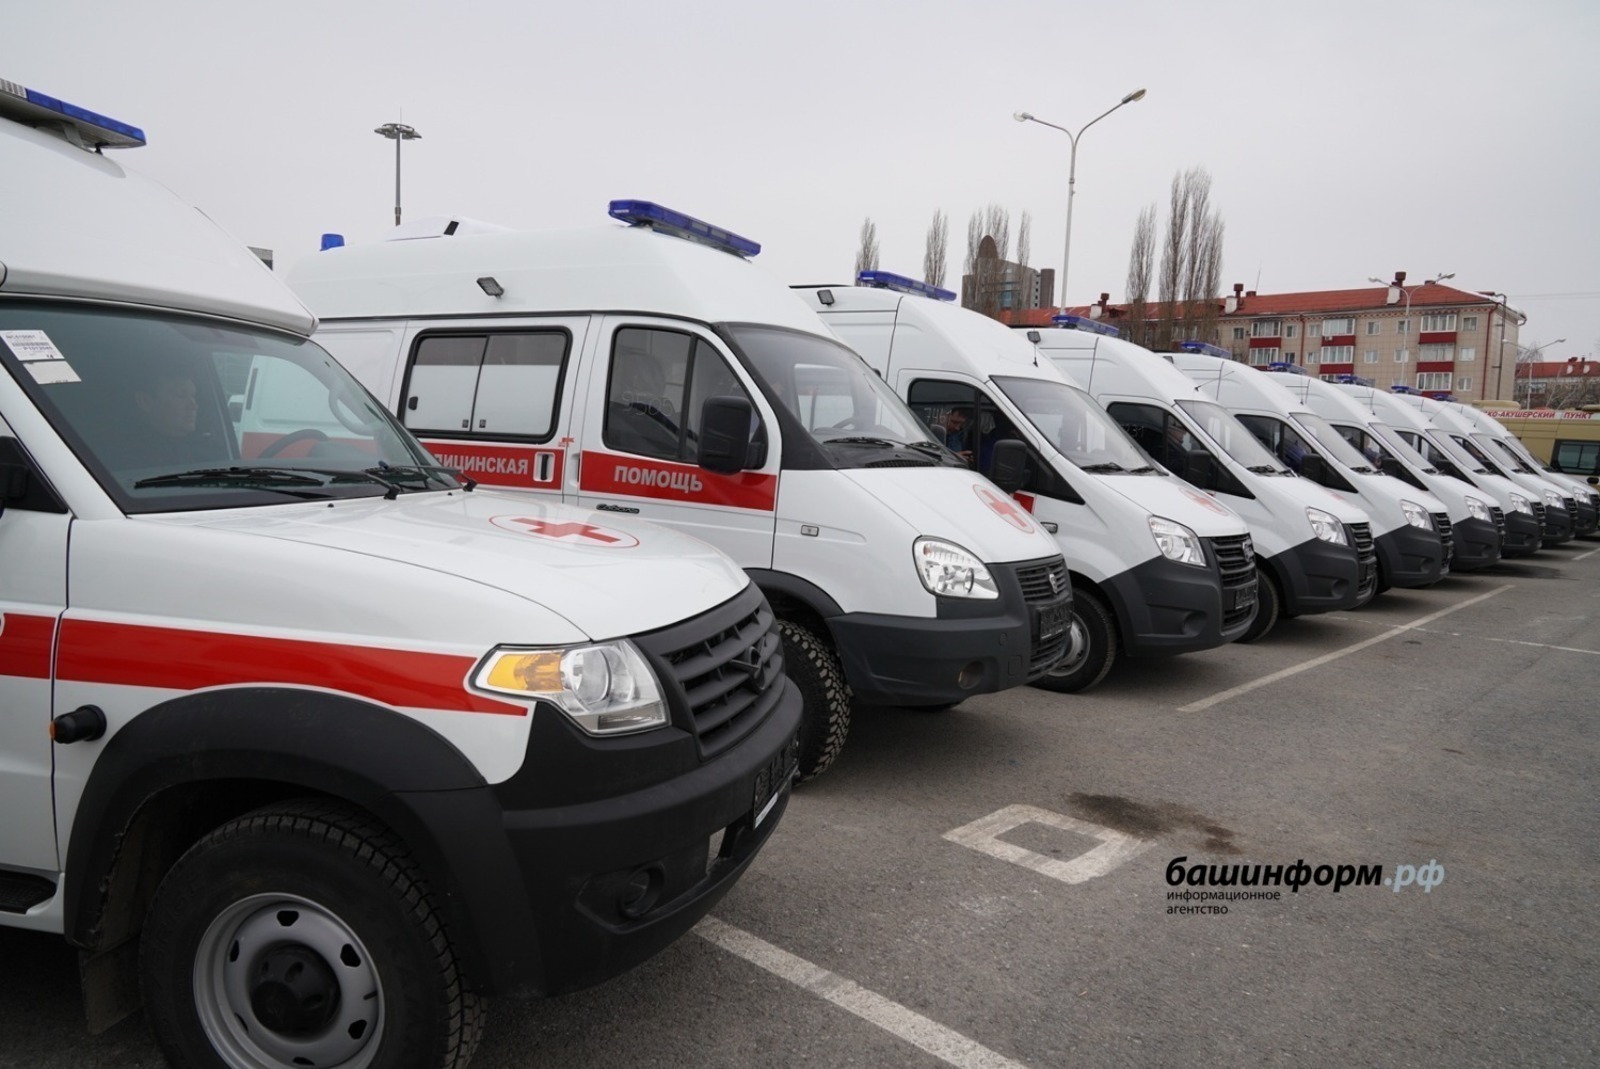 Автопарк скорой медицинской помощи в Башкирии обновляется